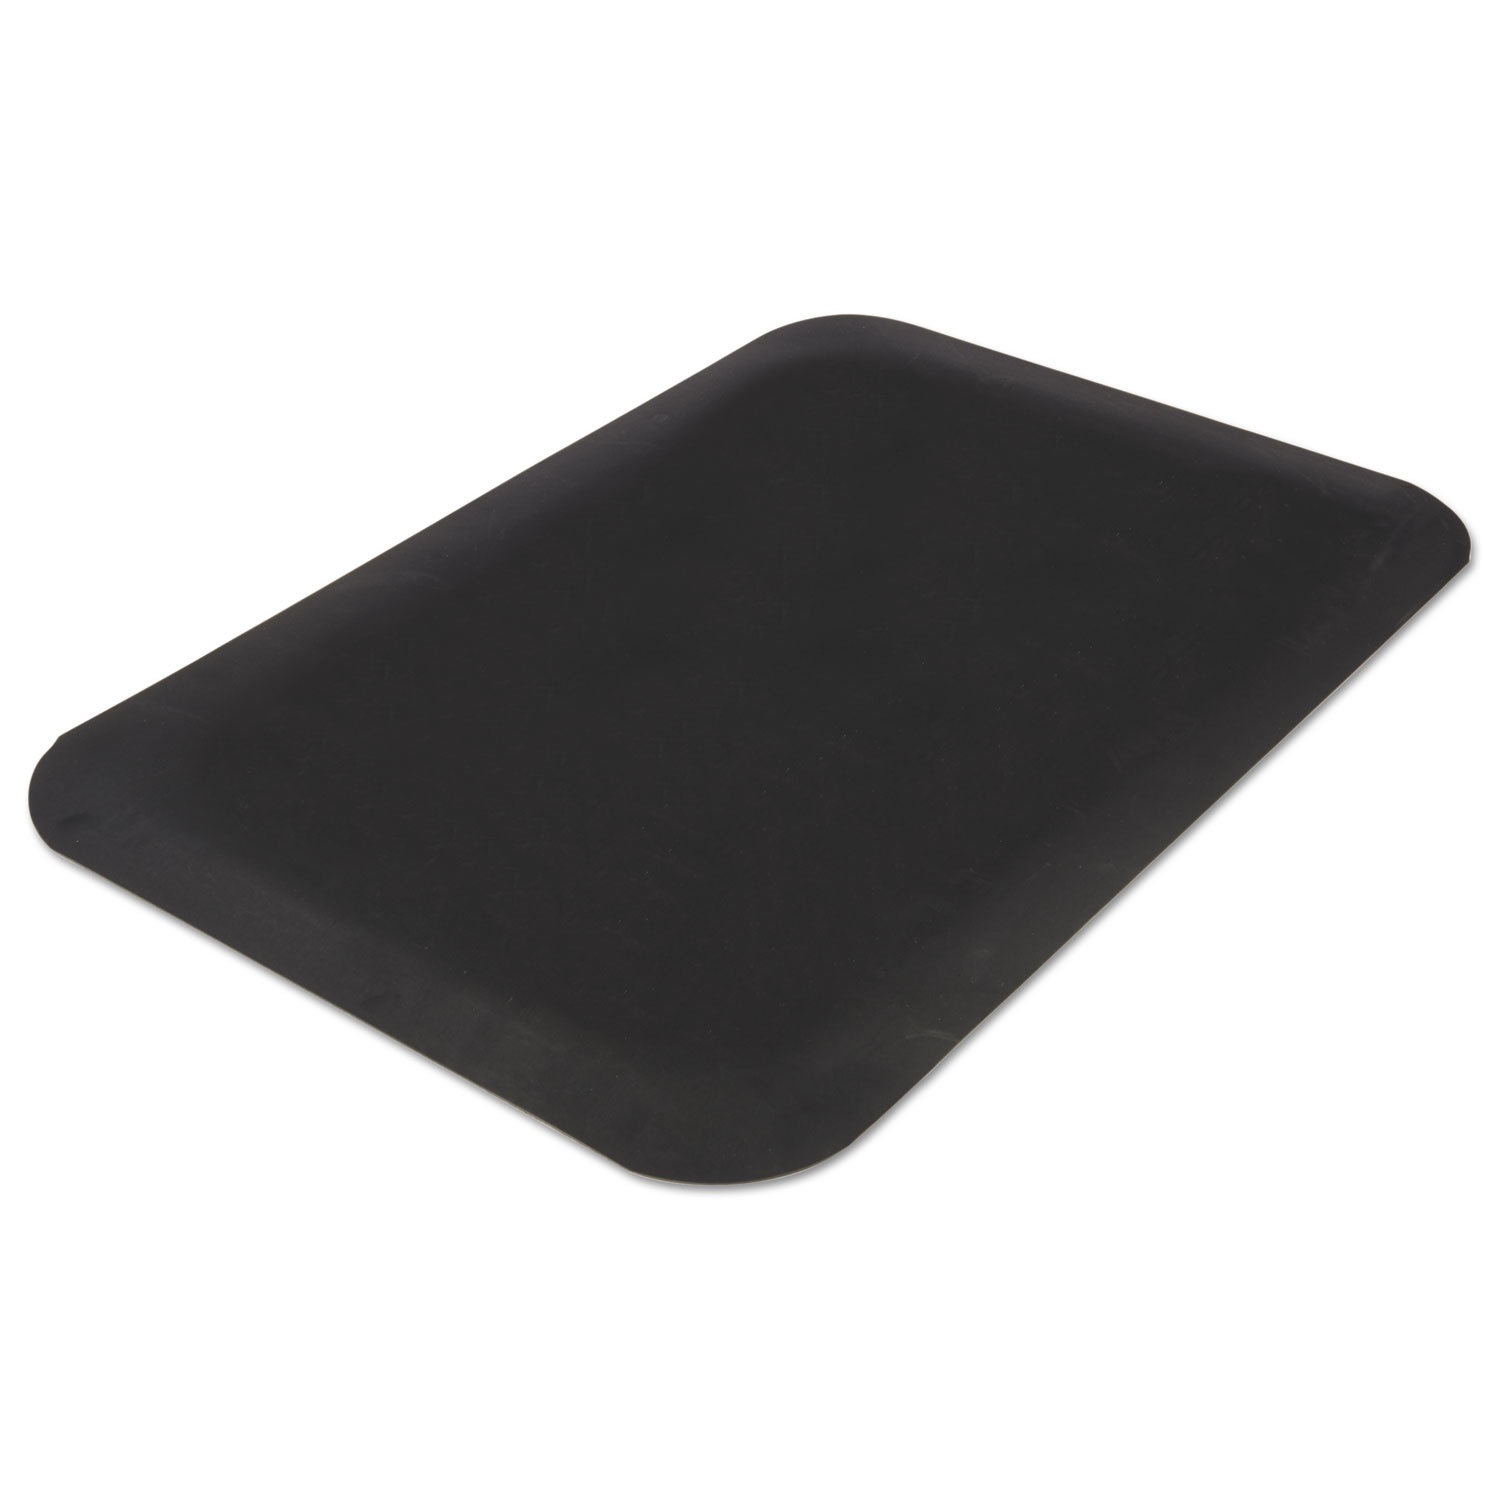  Guardian 44030535 Pro Top Anti-Fatigue Mat, PVC Foam/Solid PVC, 36 x 60, Black (MLL44030535) 